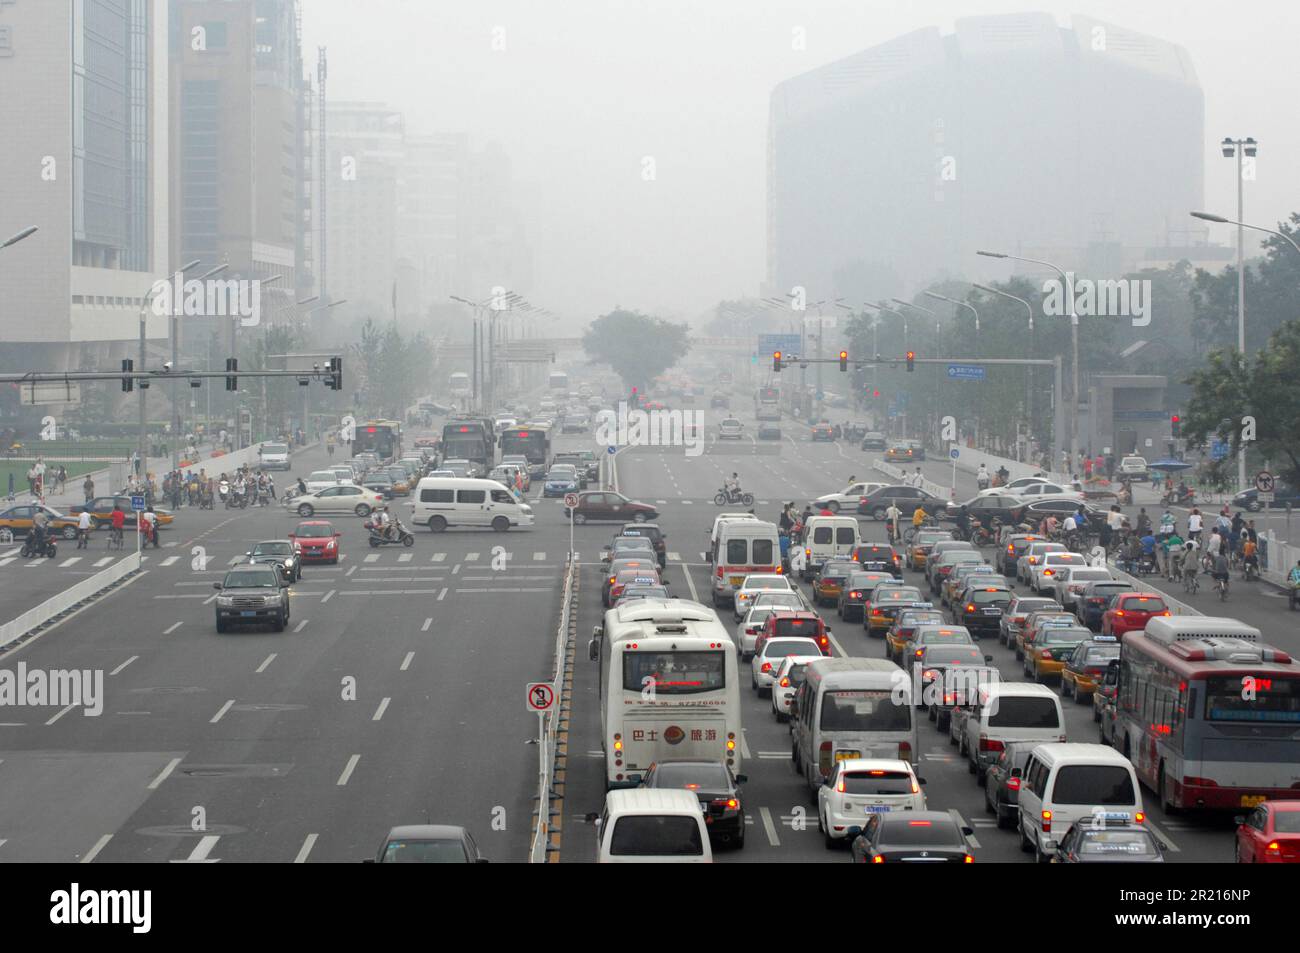 China: Autofahrer fahren in dem schweren Smog, der die Sicht einschränkte, da starker Smog über Peking hängt, während die Verschmutzung bei hohen Temperaturen und hoher Luftfeuchtigkeit zunimmt. Stockfoto